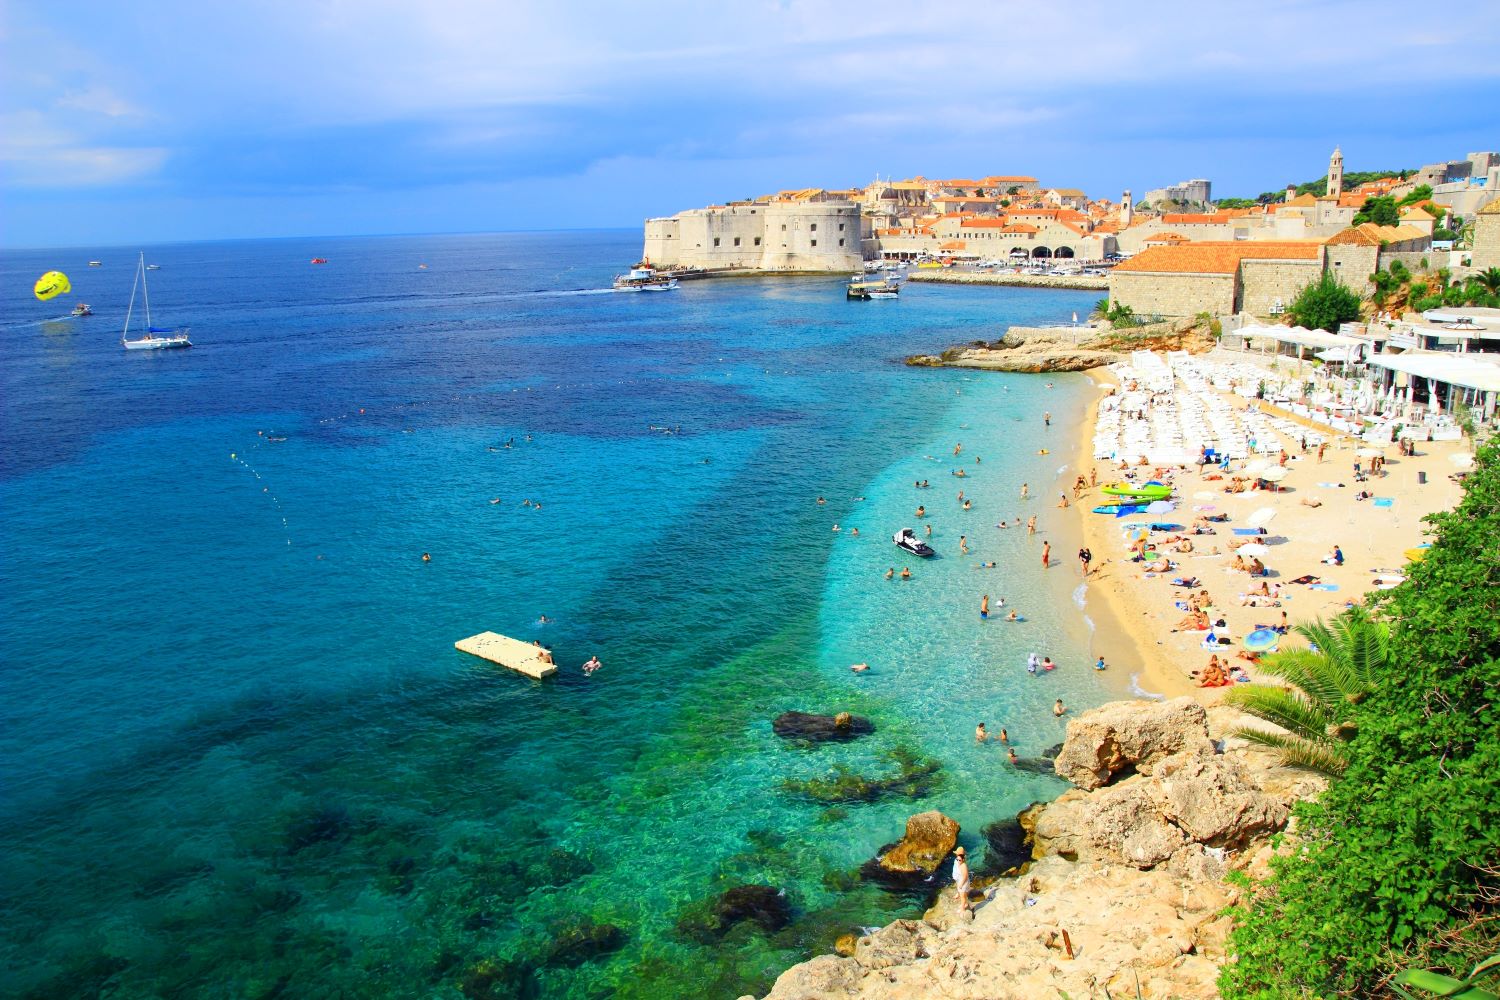 Na zdjęciu widzimy historyczne wybrzeże Chorwacji, żaglówki oraz turystów wypoczywających na plaży.